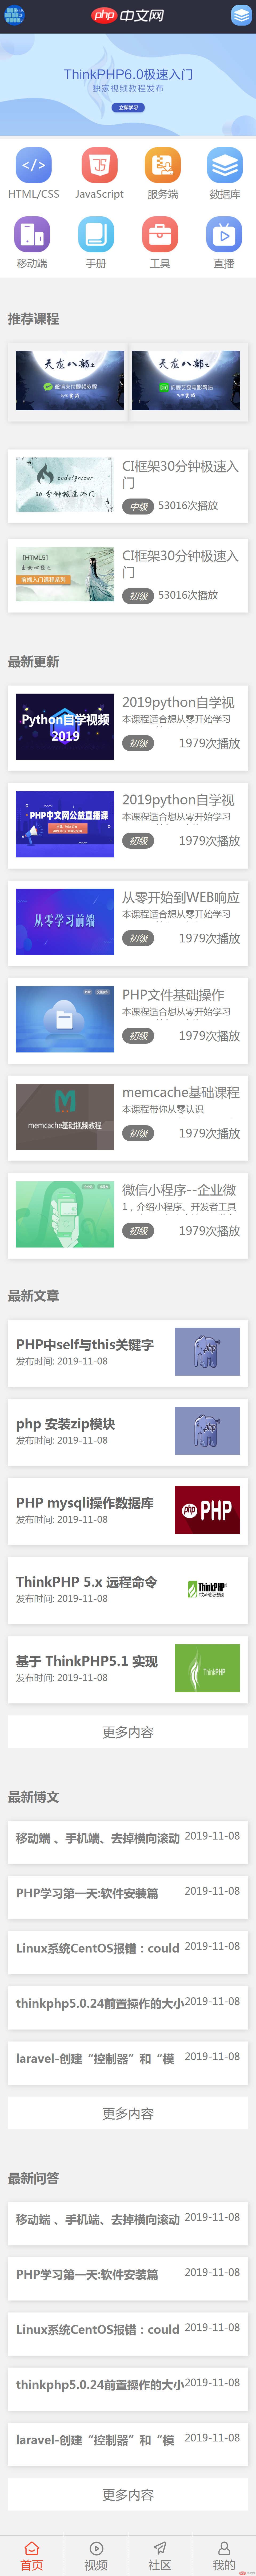 弹性布局仿PHP中文网手机站-首页.png